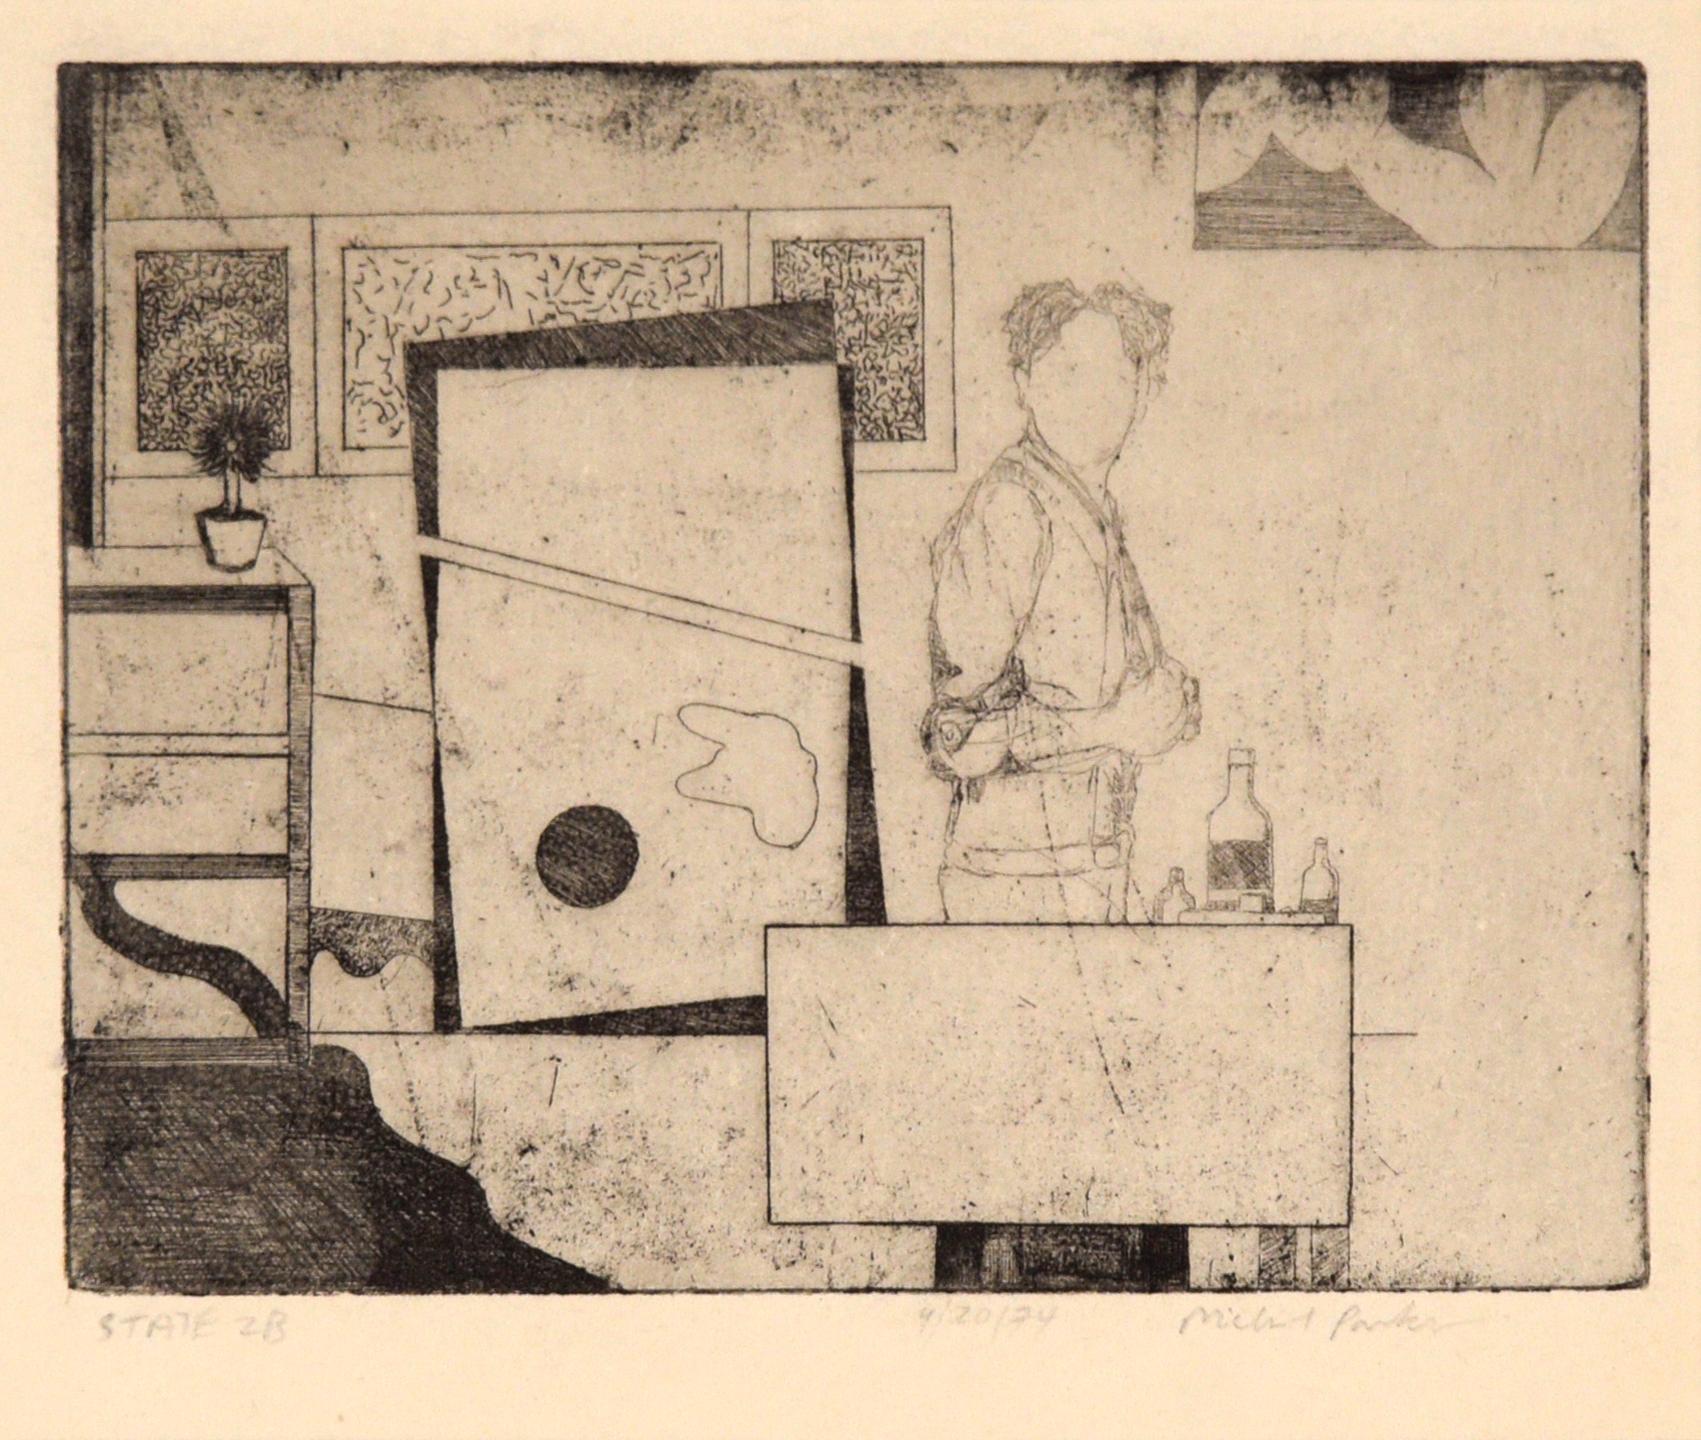 „State 2B“, Künstler im Atelier, figurale Radierung, 1974 – Print von Michael Pauker 